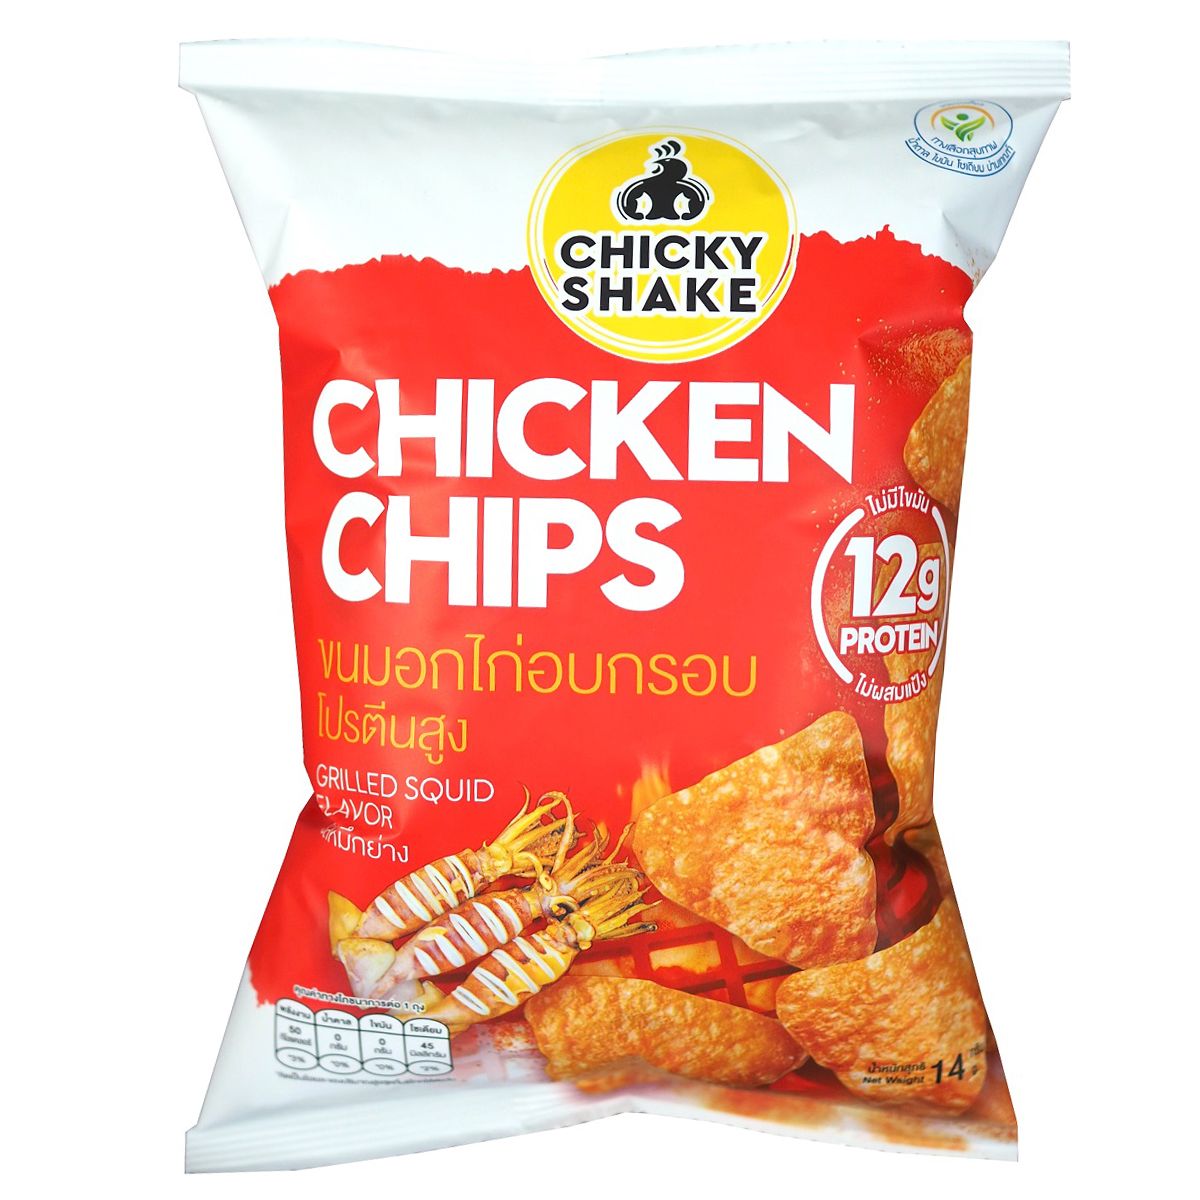 💥(แพ็ค3)💥ชิคกี้เชคชิกเก้นชิพส์รสปลาหมึกย่าง 12 กรัมโปรตีน 14 กรัม/Chicky Shake Chicken Chips Grilled Squid Flavour 12g Protein 14g